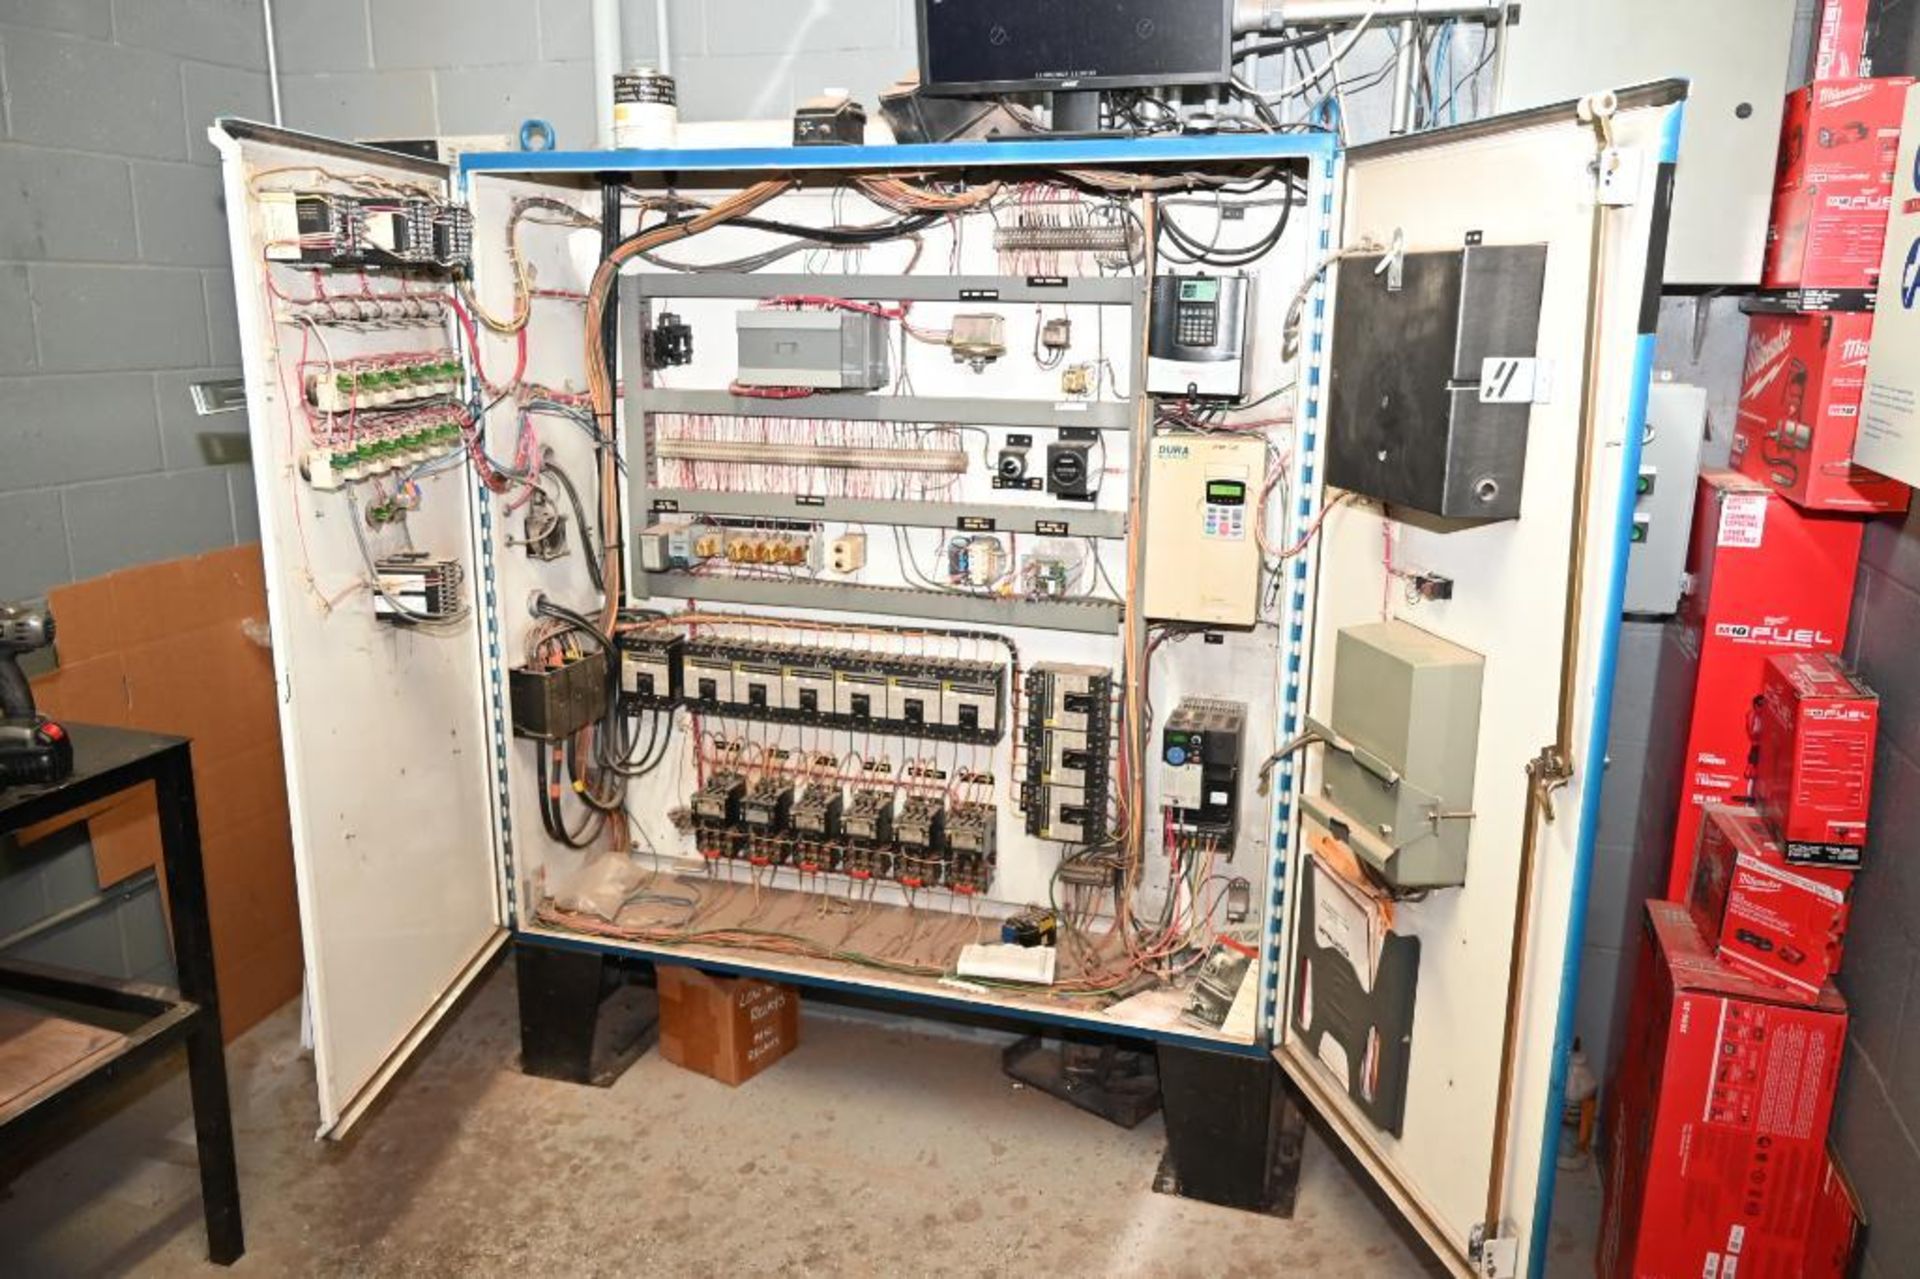 1996 Hurst Boiler System - Image 38 of 271